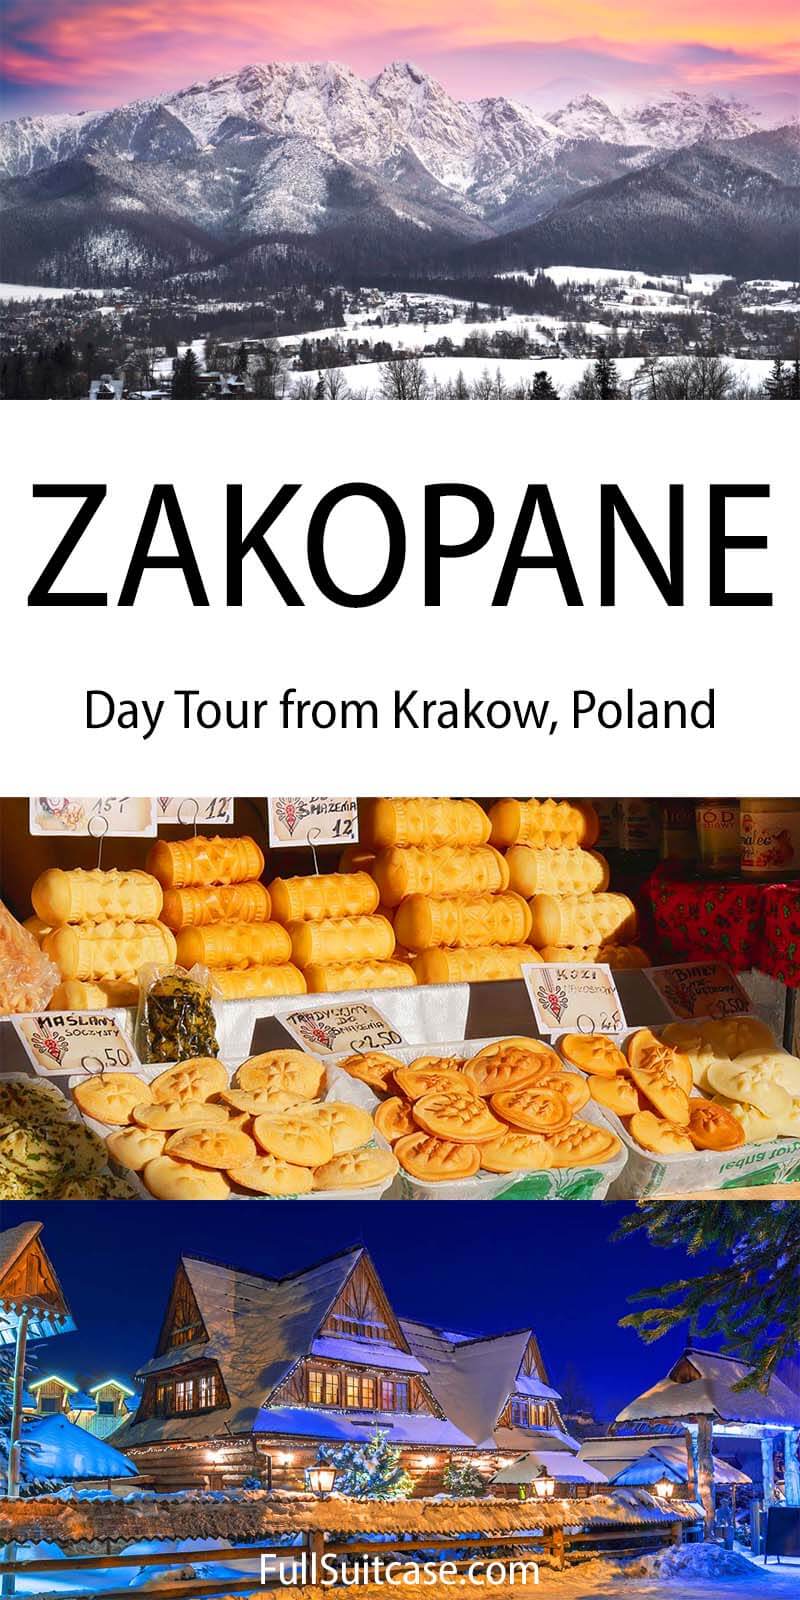 Zakopane day tour from Krakow